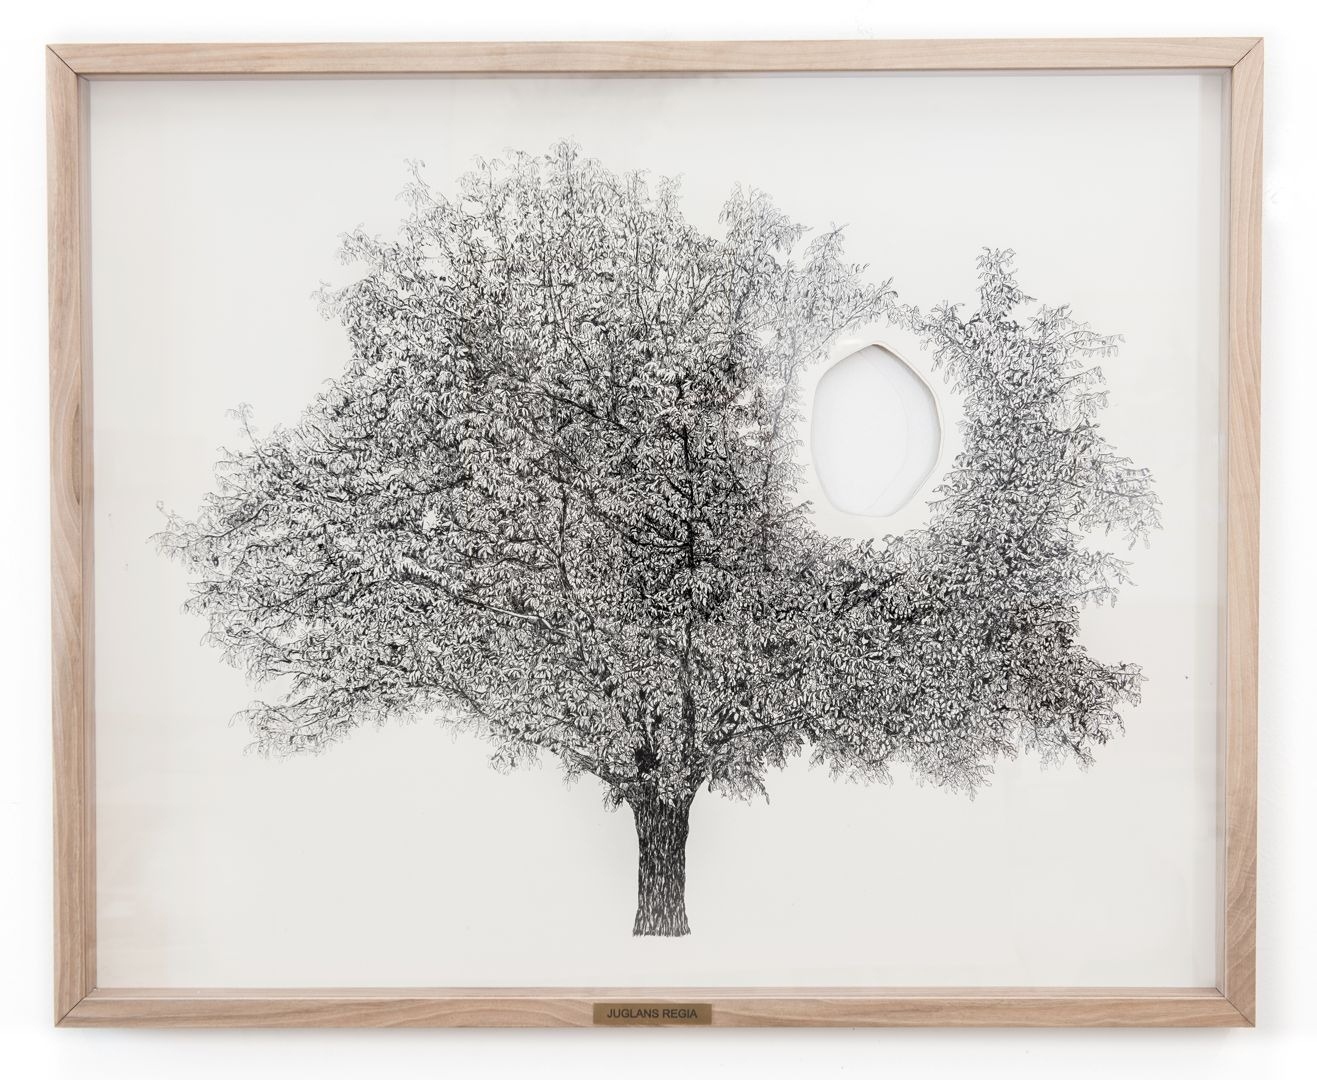 Gosztola Kitti: Juglans regia (2013)  ink on paper, walnut wood, plexiglass  82 x 67 cm 